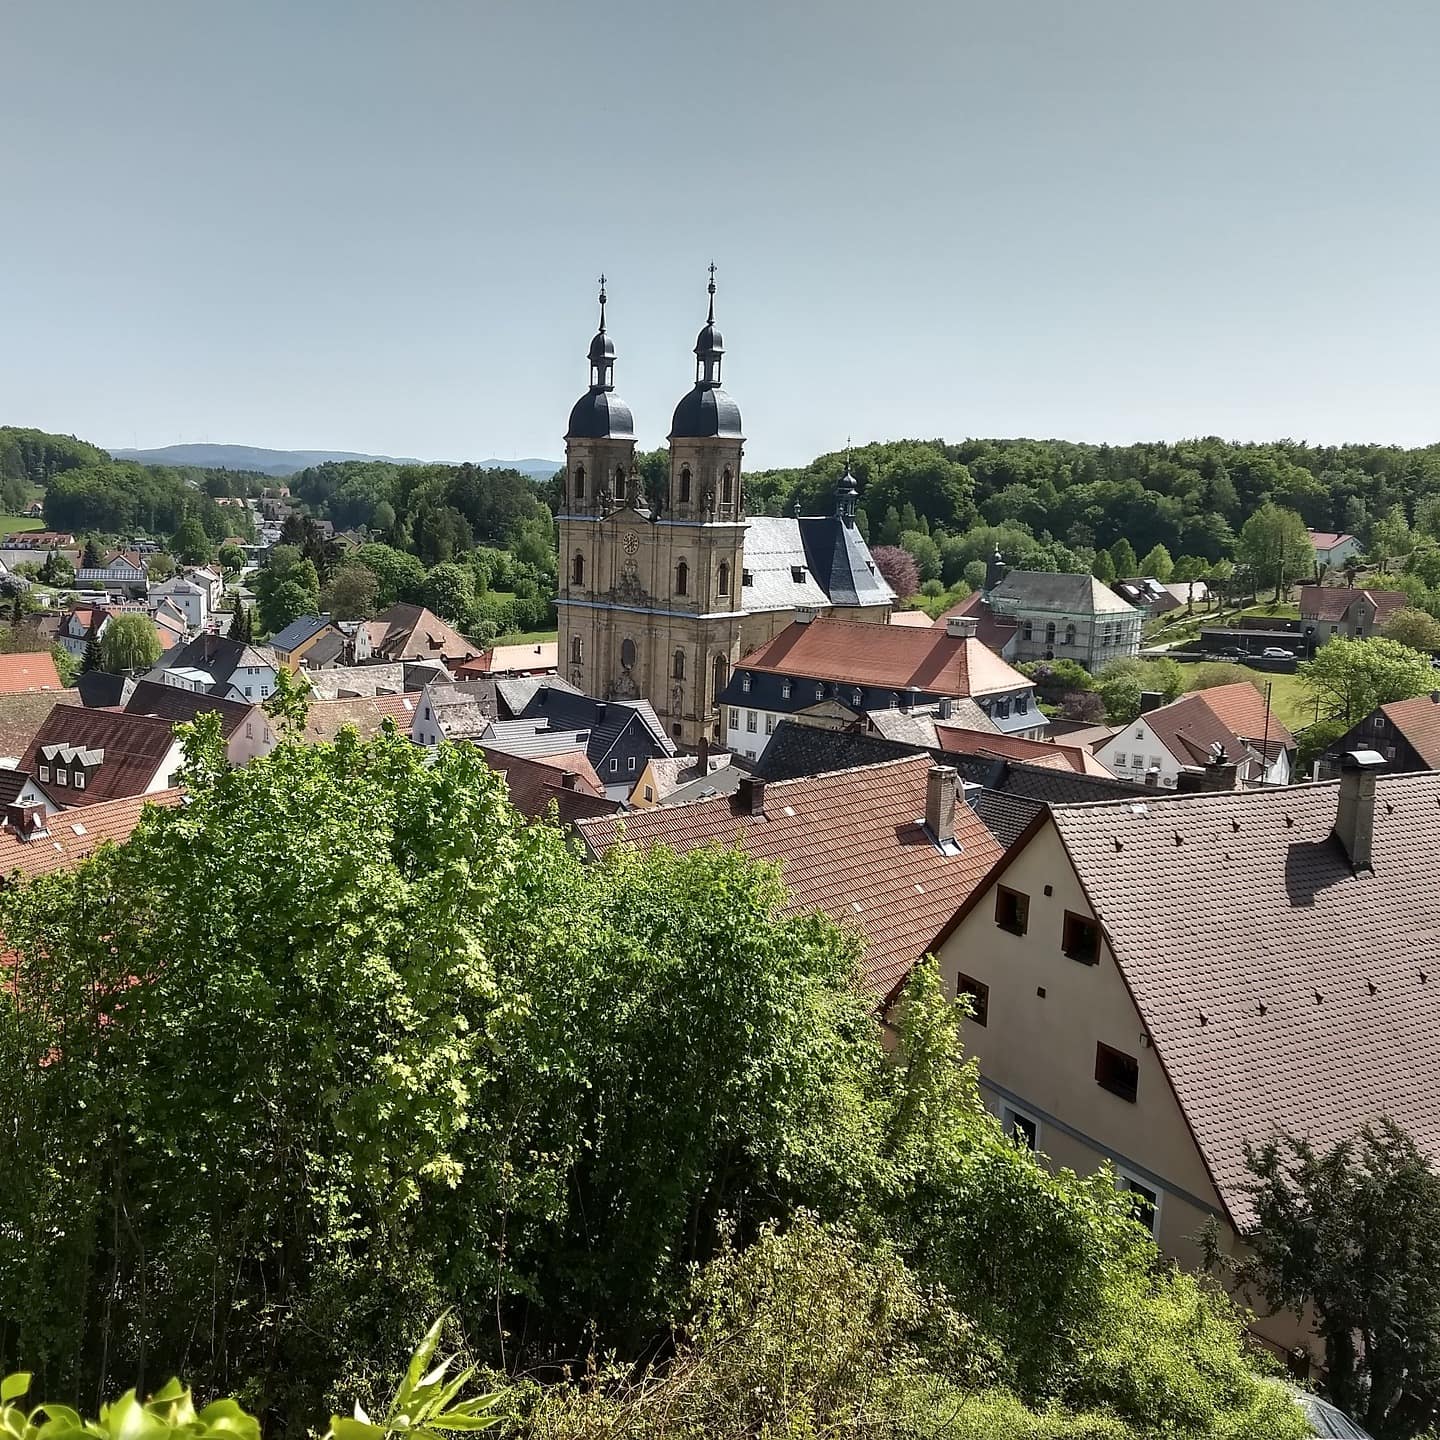 Blick über ein Dorf in Franken, zu sehen sind Häuser und eine Kirche